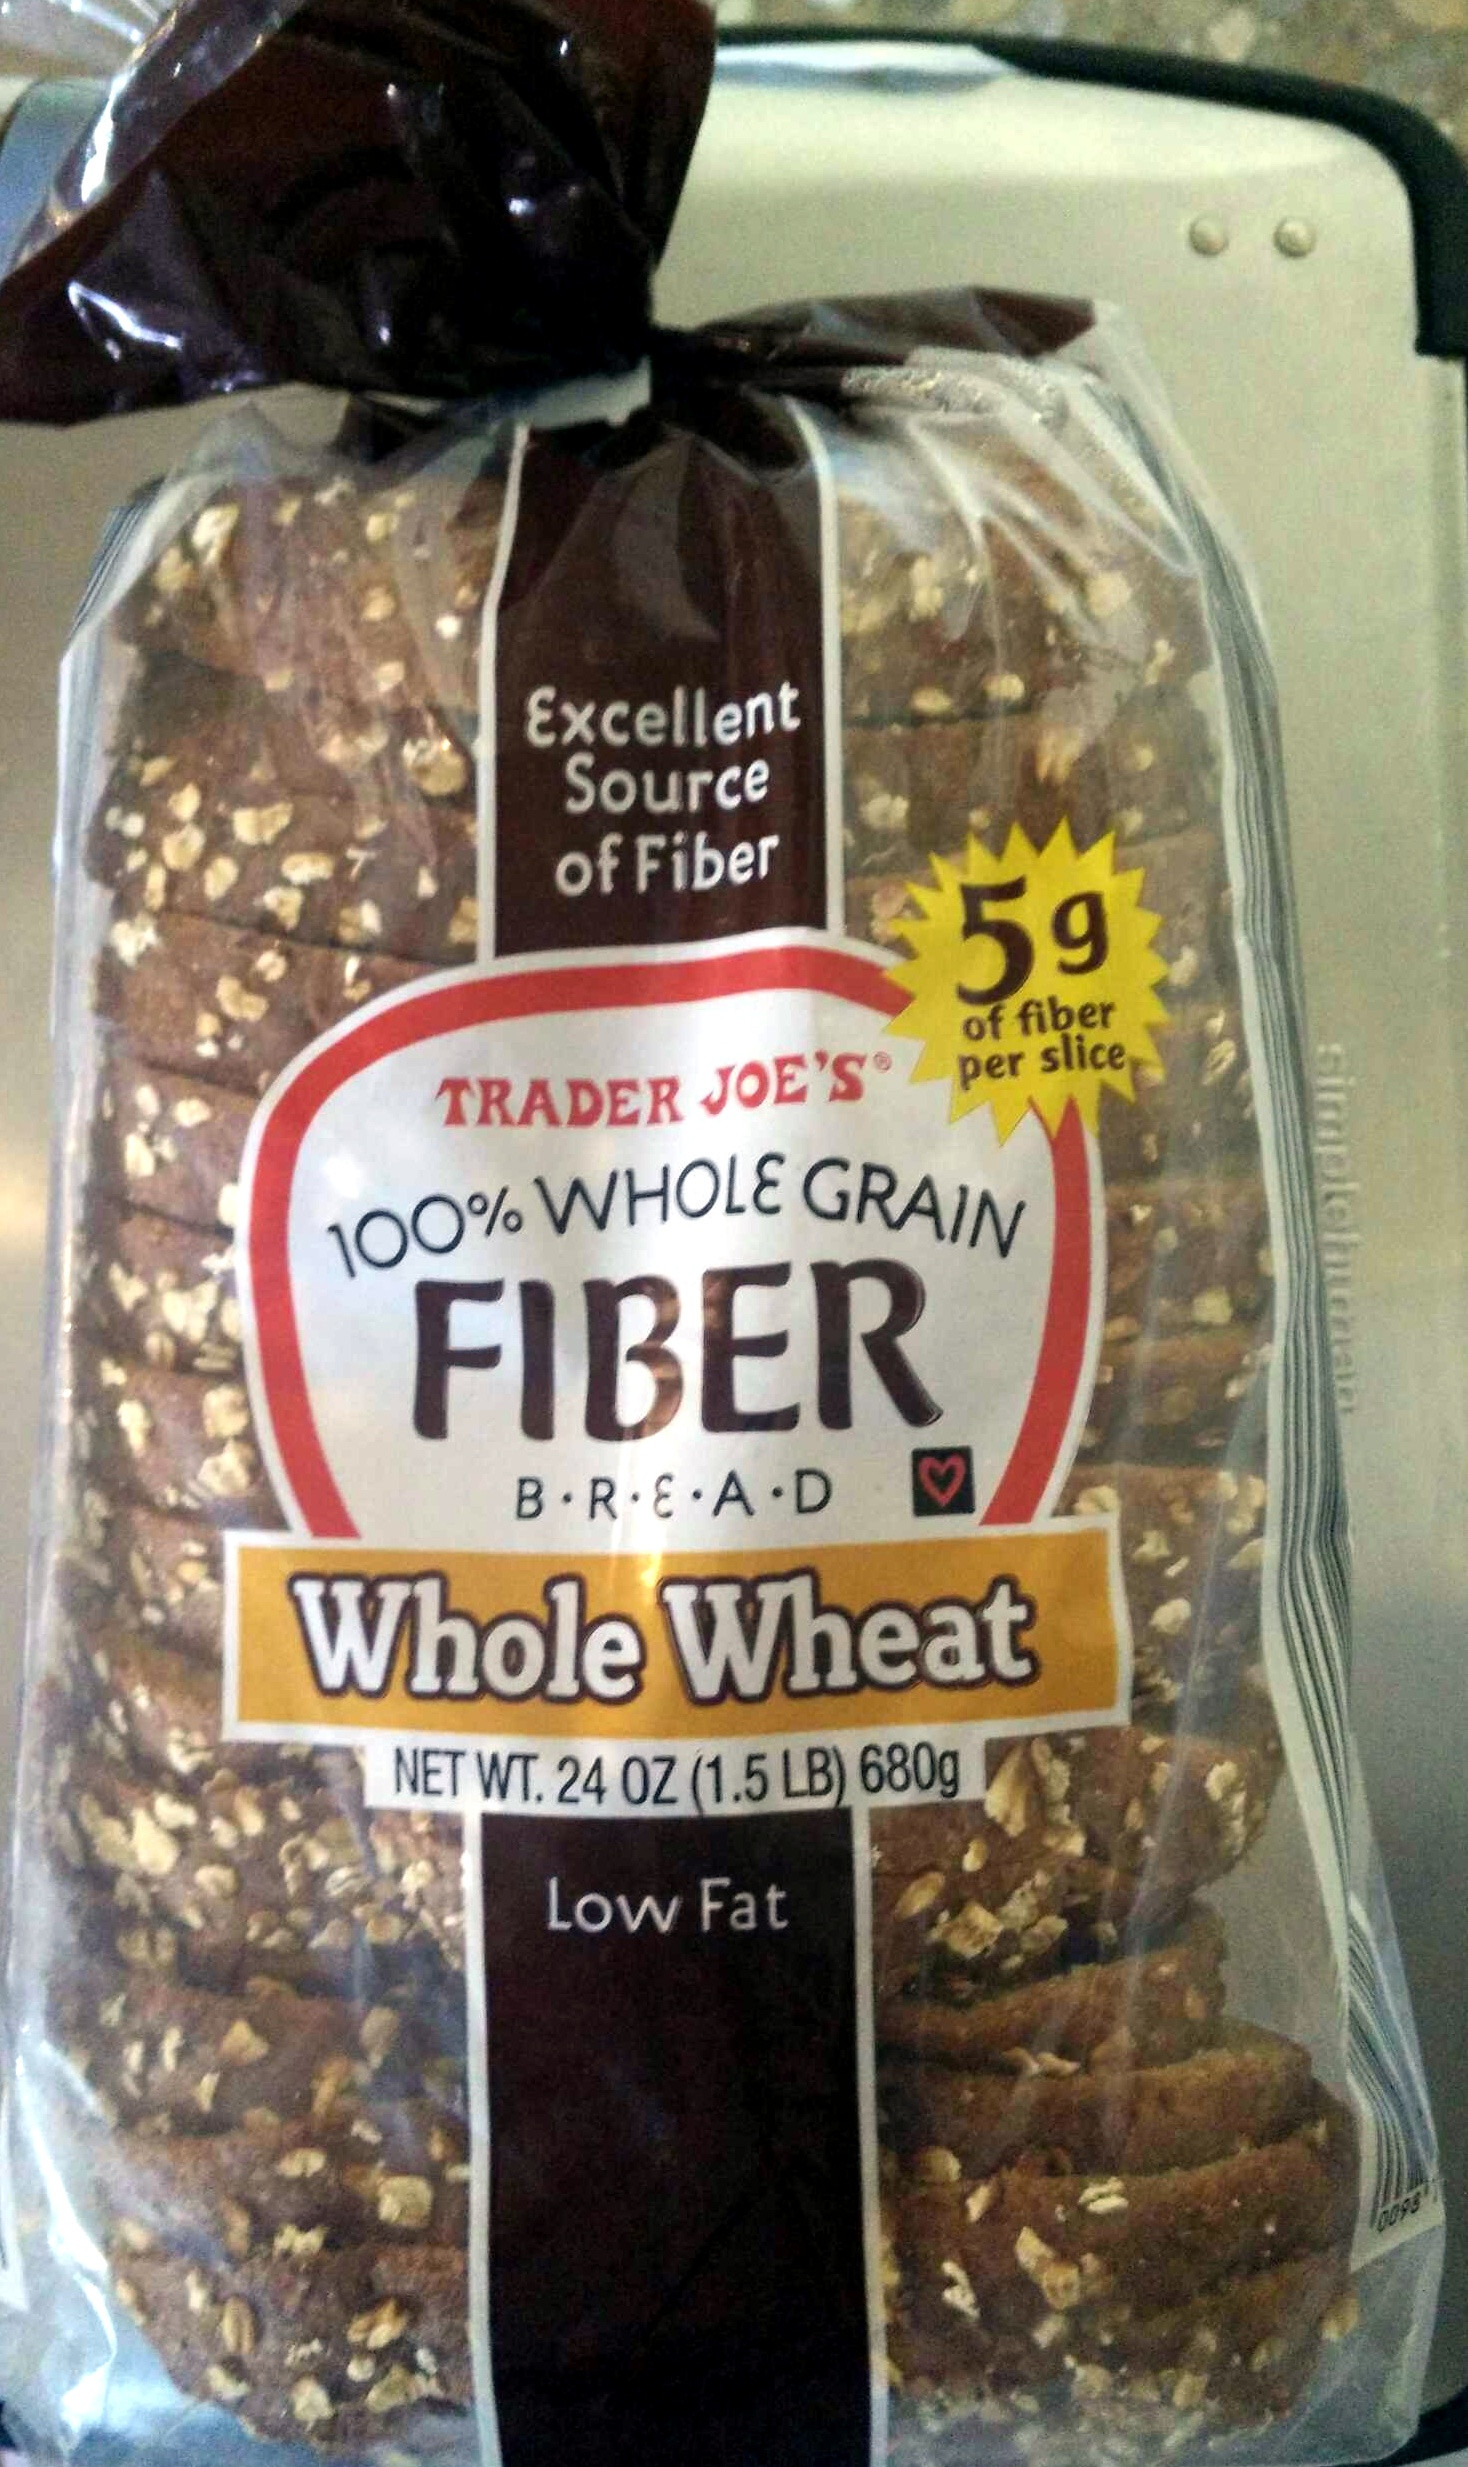 Whole Grain Bread Fiber
 Whole Grain Fiber Bread Trader Joe s 24 OZ 1 5